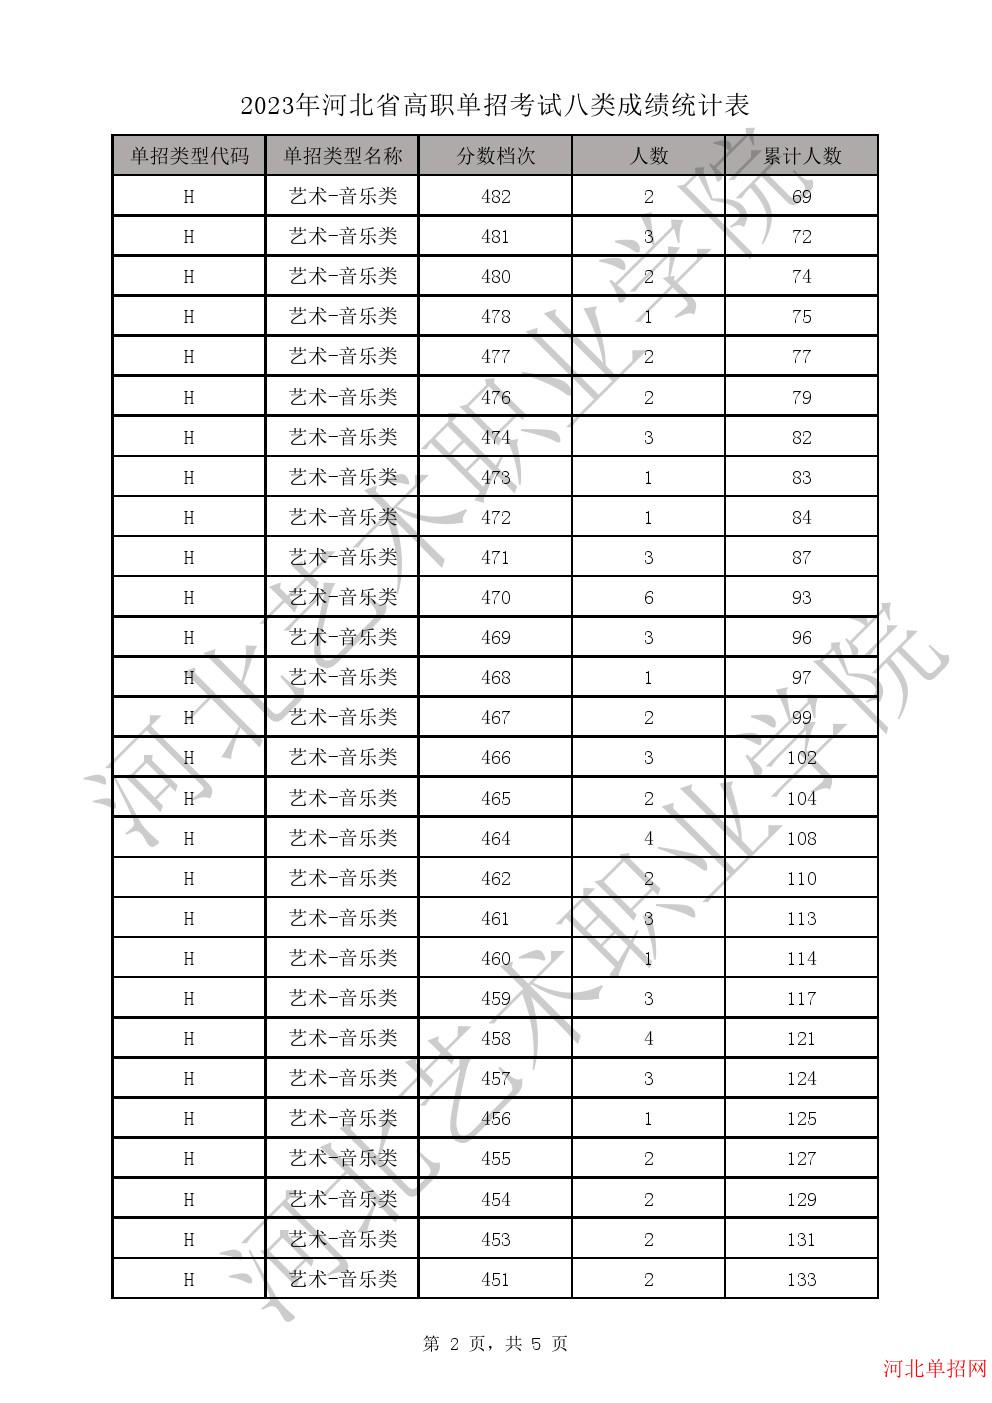 2023年河北省高职单招考试八类一分一档表-H艺术-音乐类一分一档表 图2